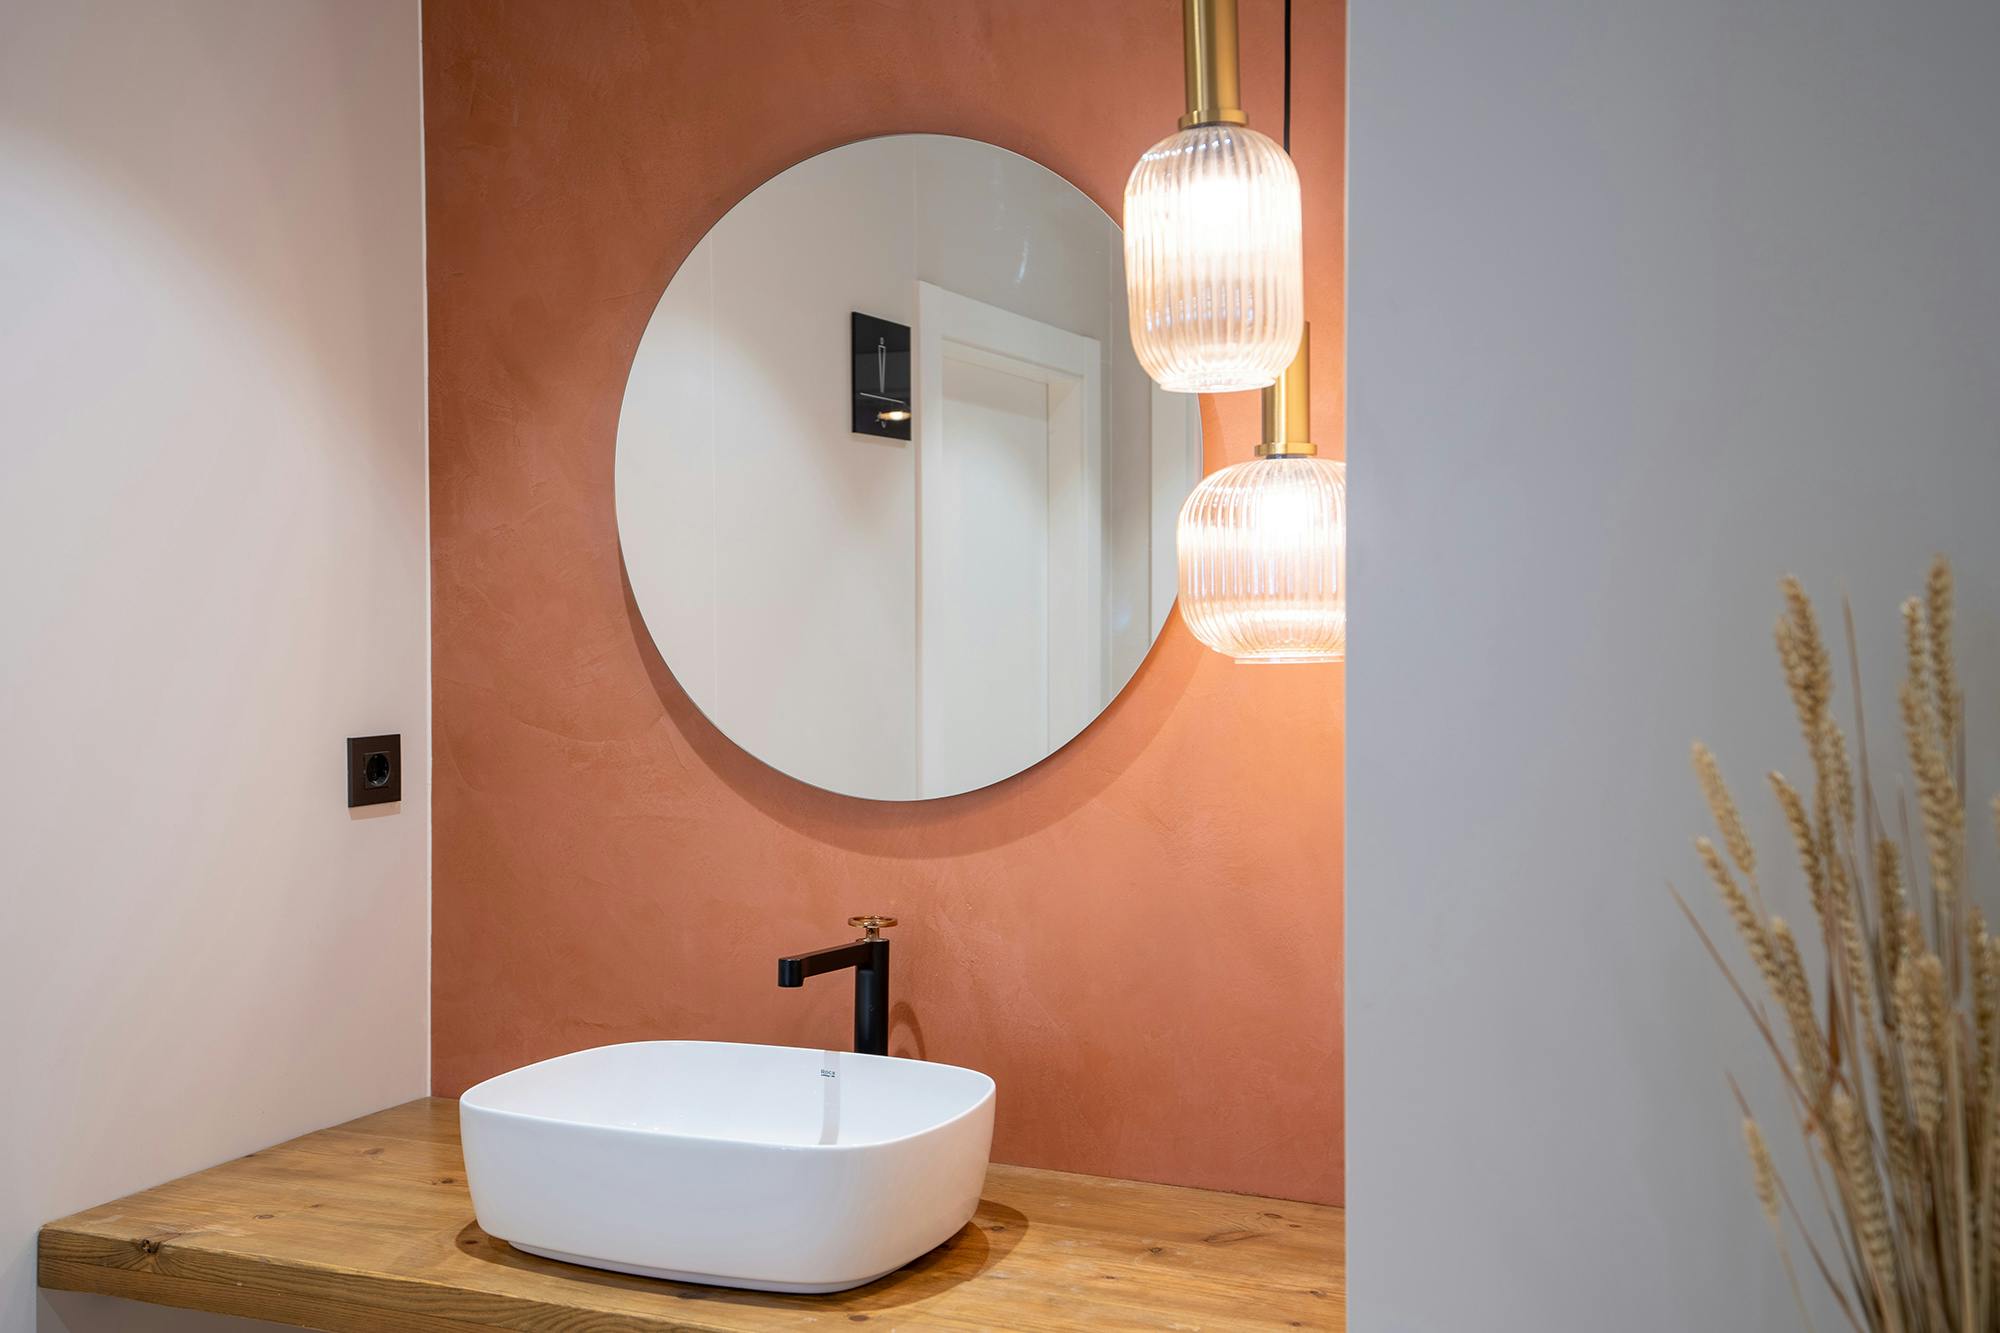 Encimeras de baño a medida: 4 ideas de baños de diseño - Cosentino España